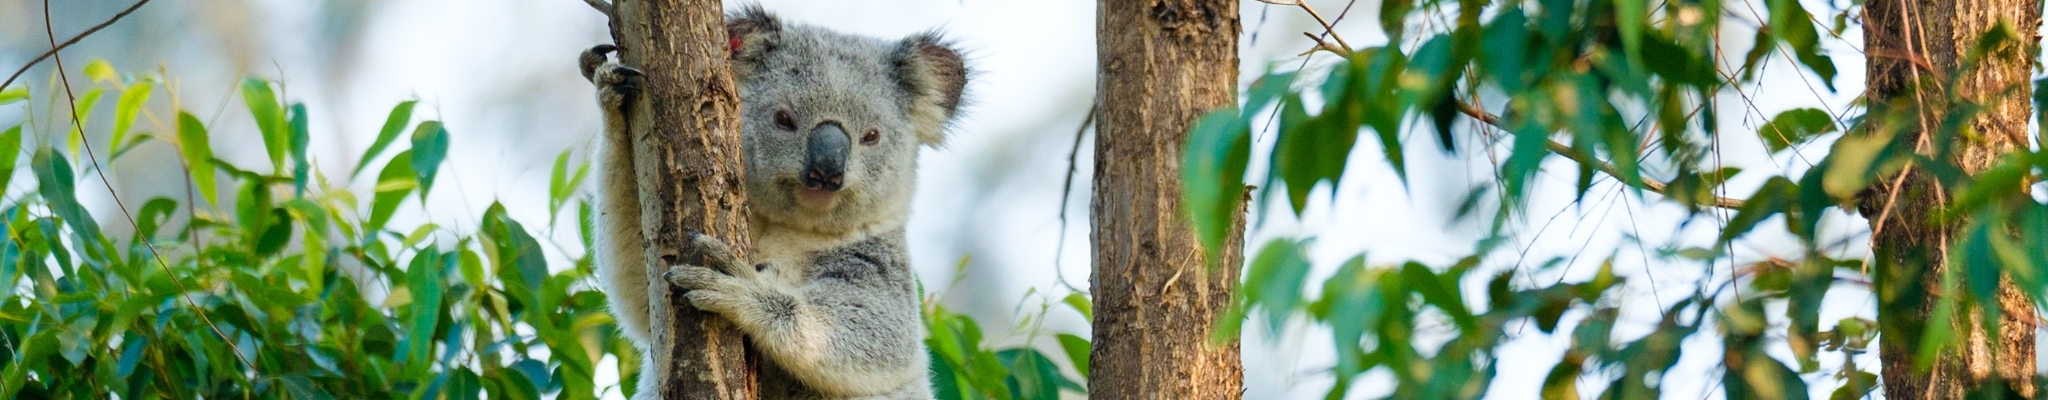 A koala holds onto a tree branch at Tuckurimba Koala Gardens